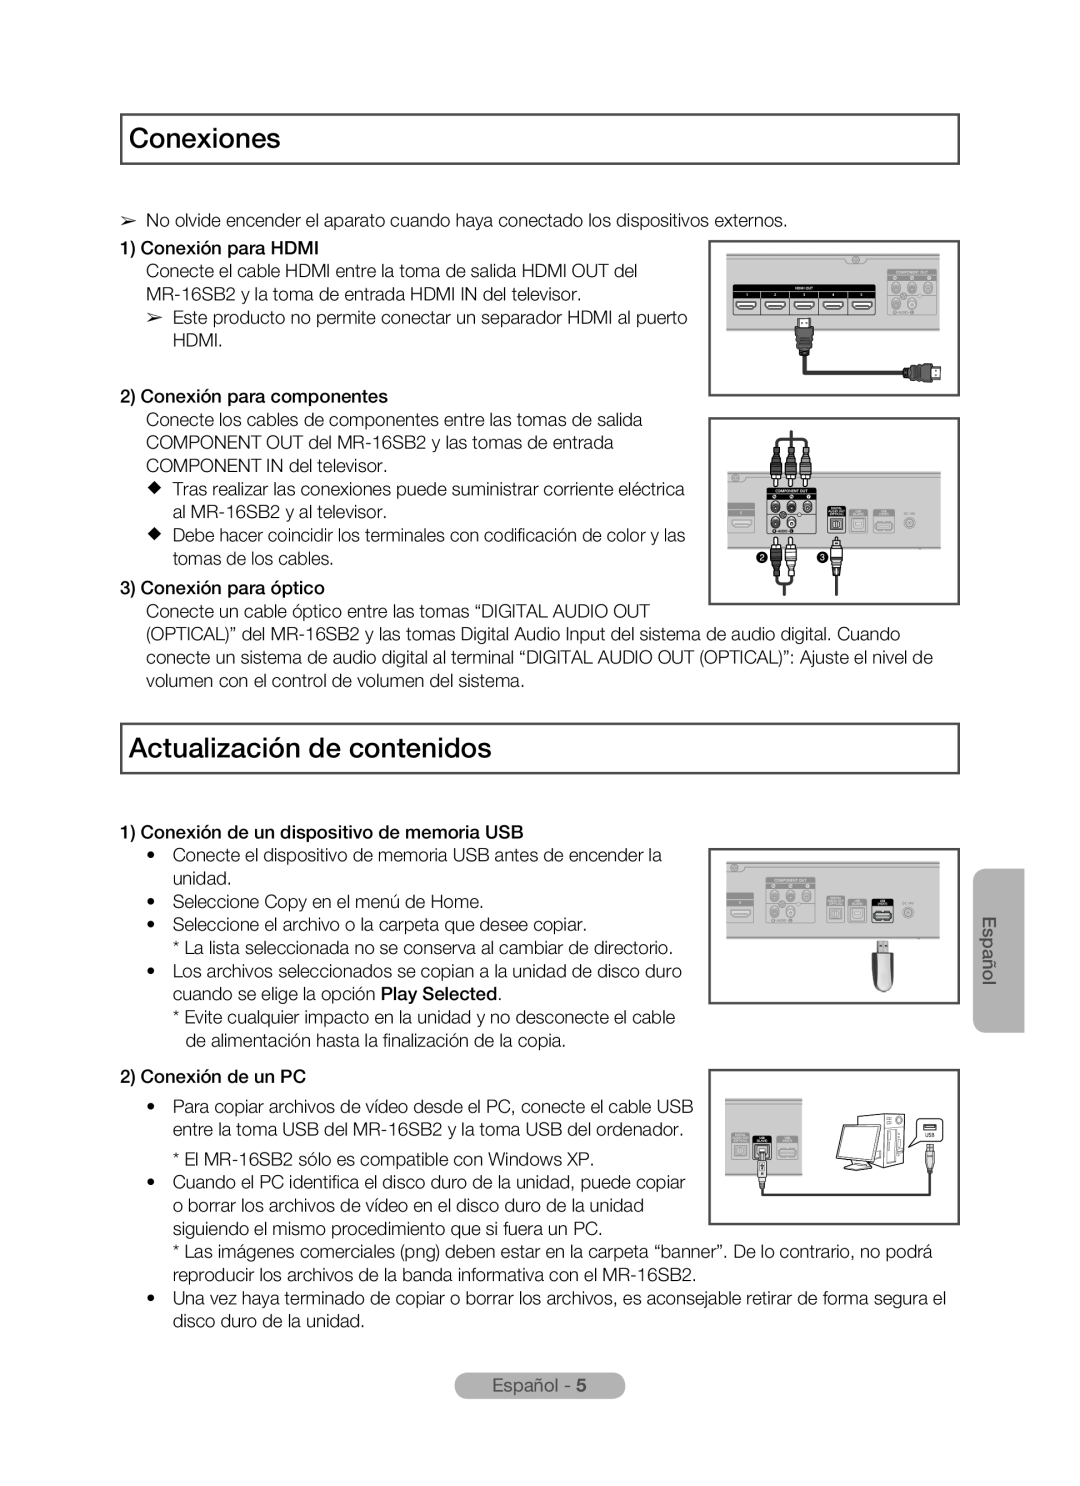 Samsung MR-16SB2 manual Conexiones, Actualización de contenidos, Español 